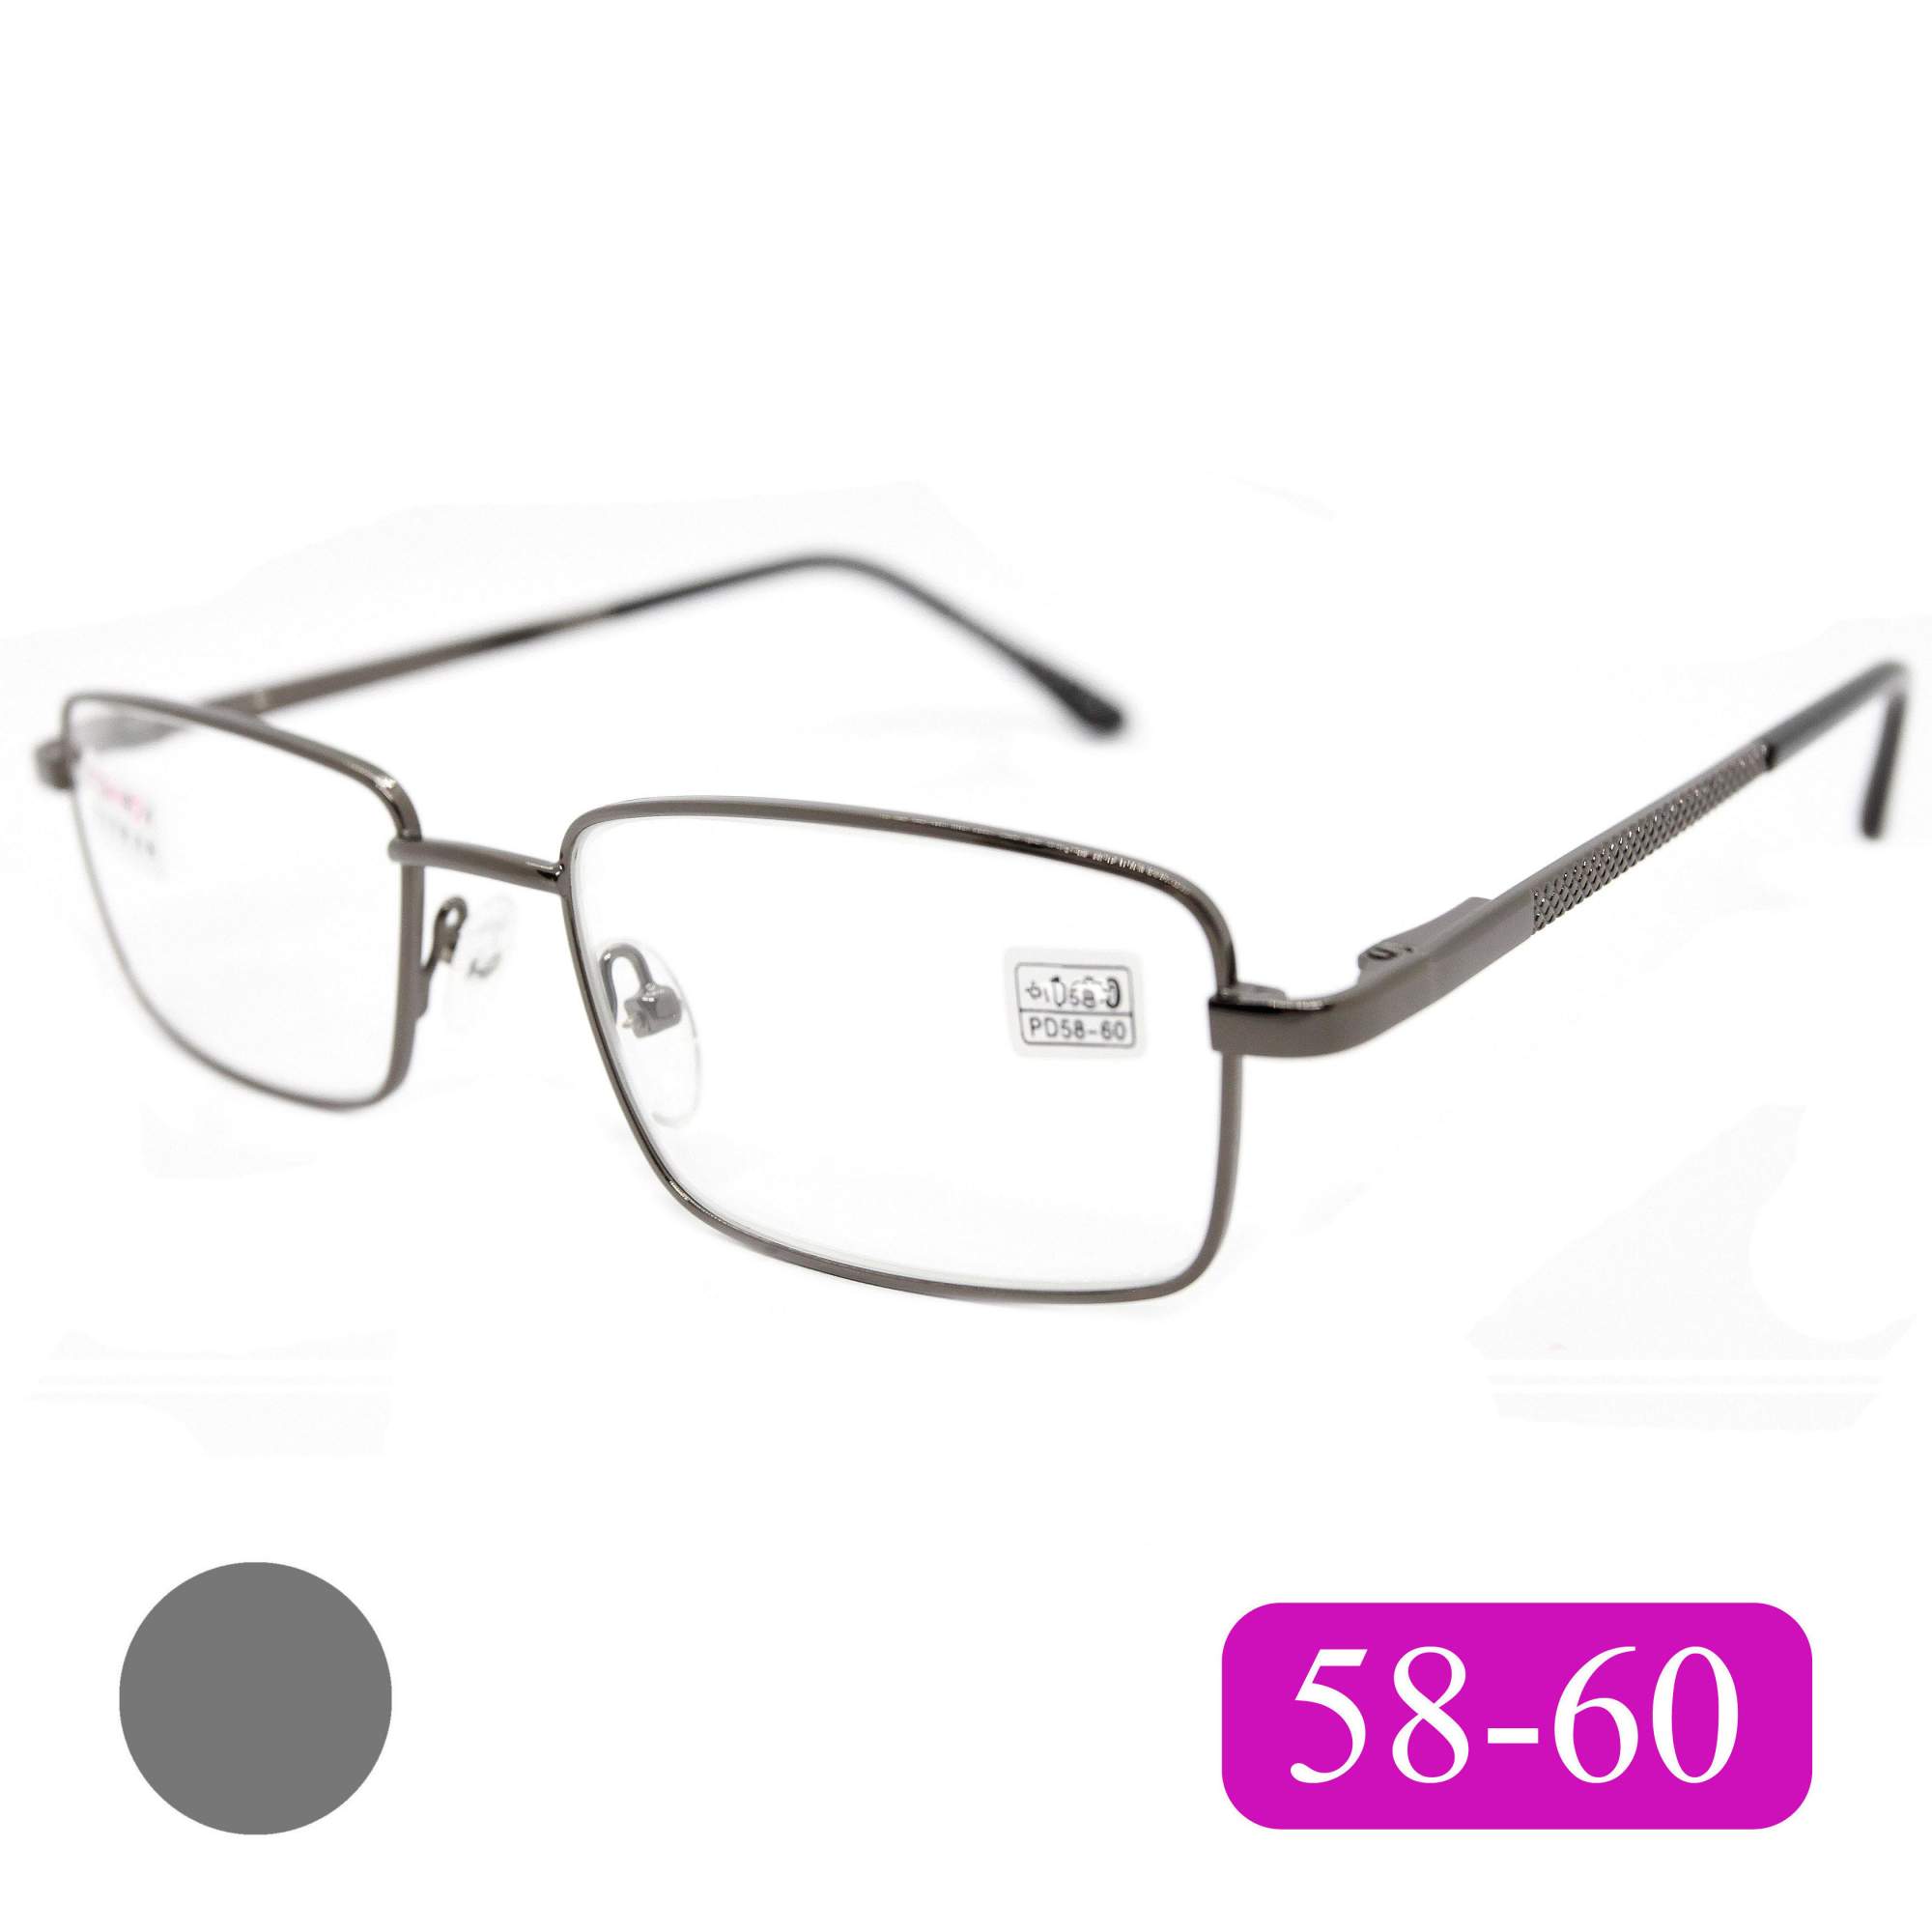 Готовые очки Fedrov 569, со стеклянной линзой, +1,25, без футляра, цвет серый, РЦ 58-60